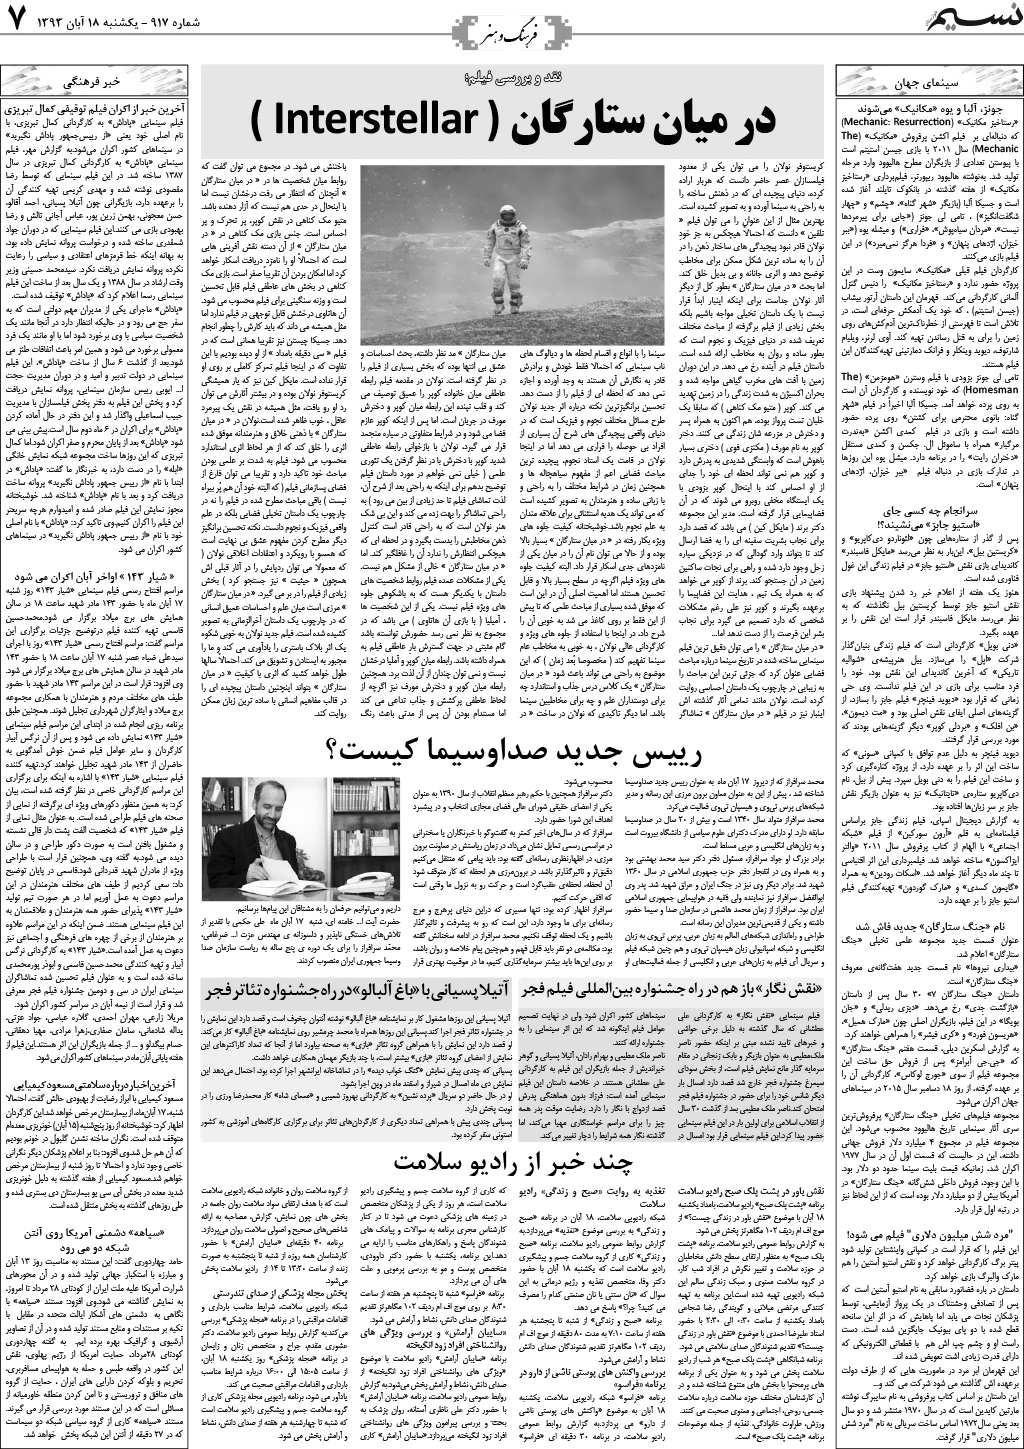 صفحه فرهنگ و هنر روزنامه نسیم شماره 917